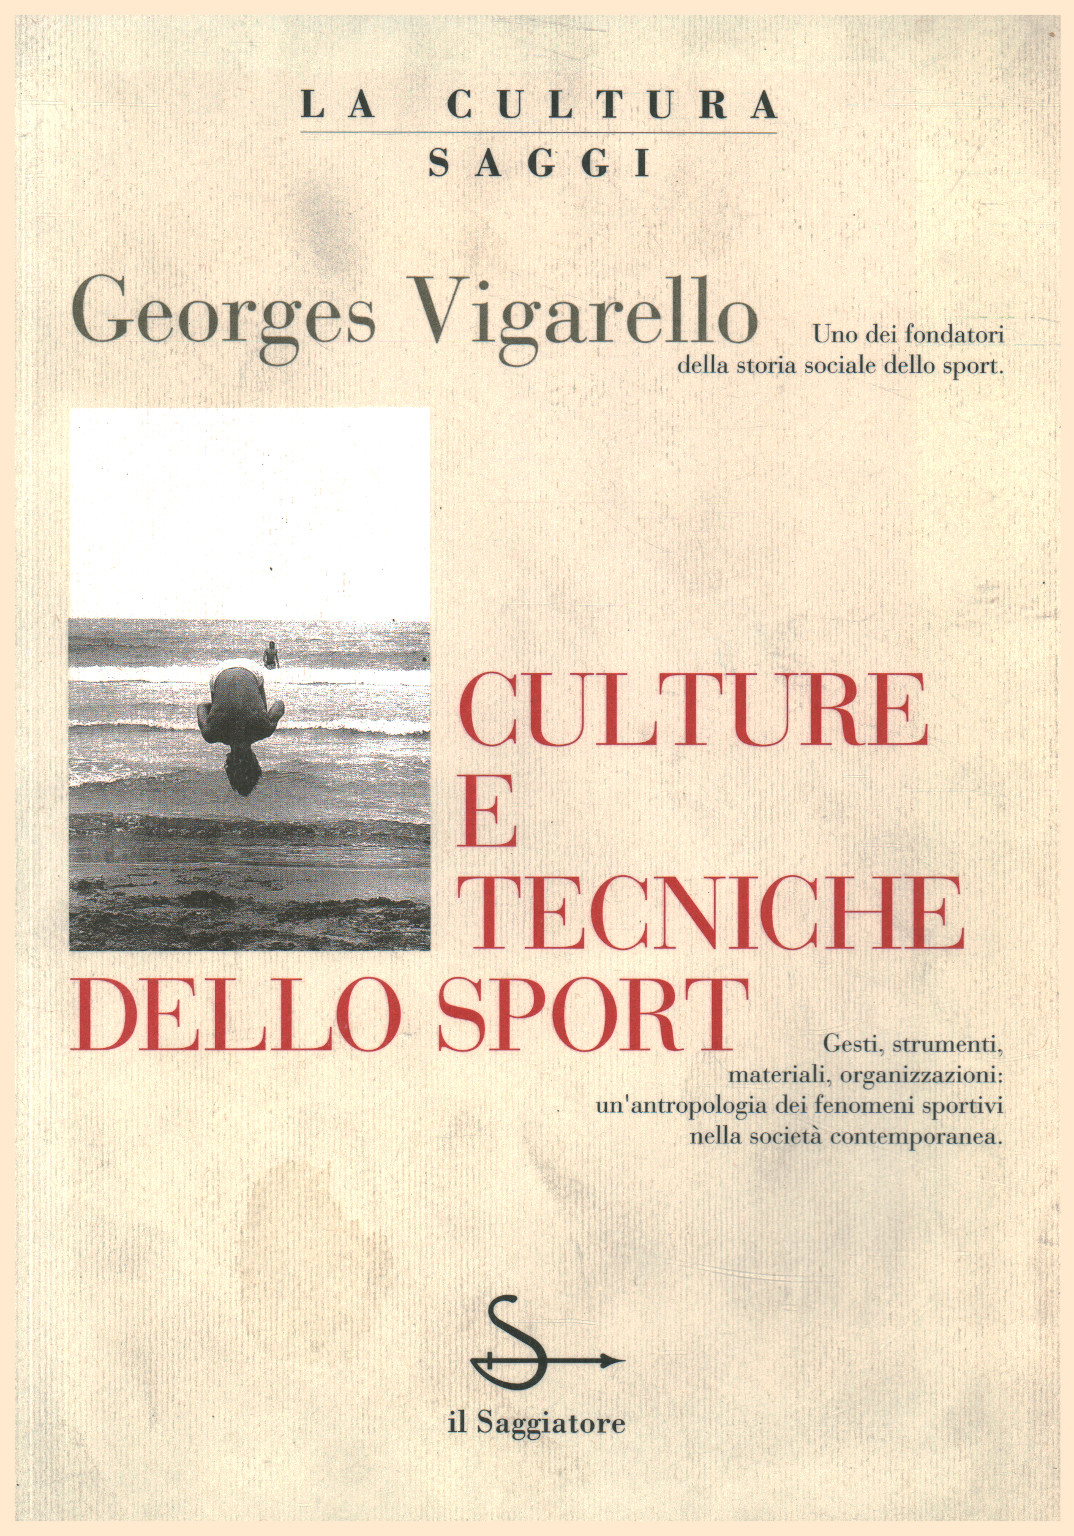 Culture e tecniche dello sport, s.a.